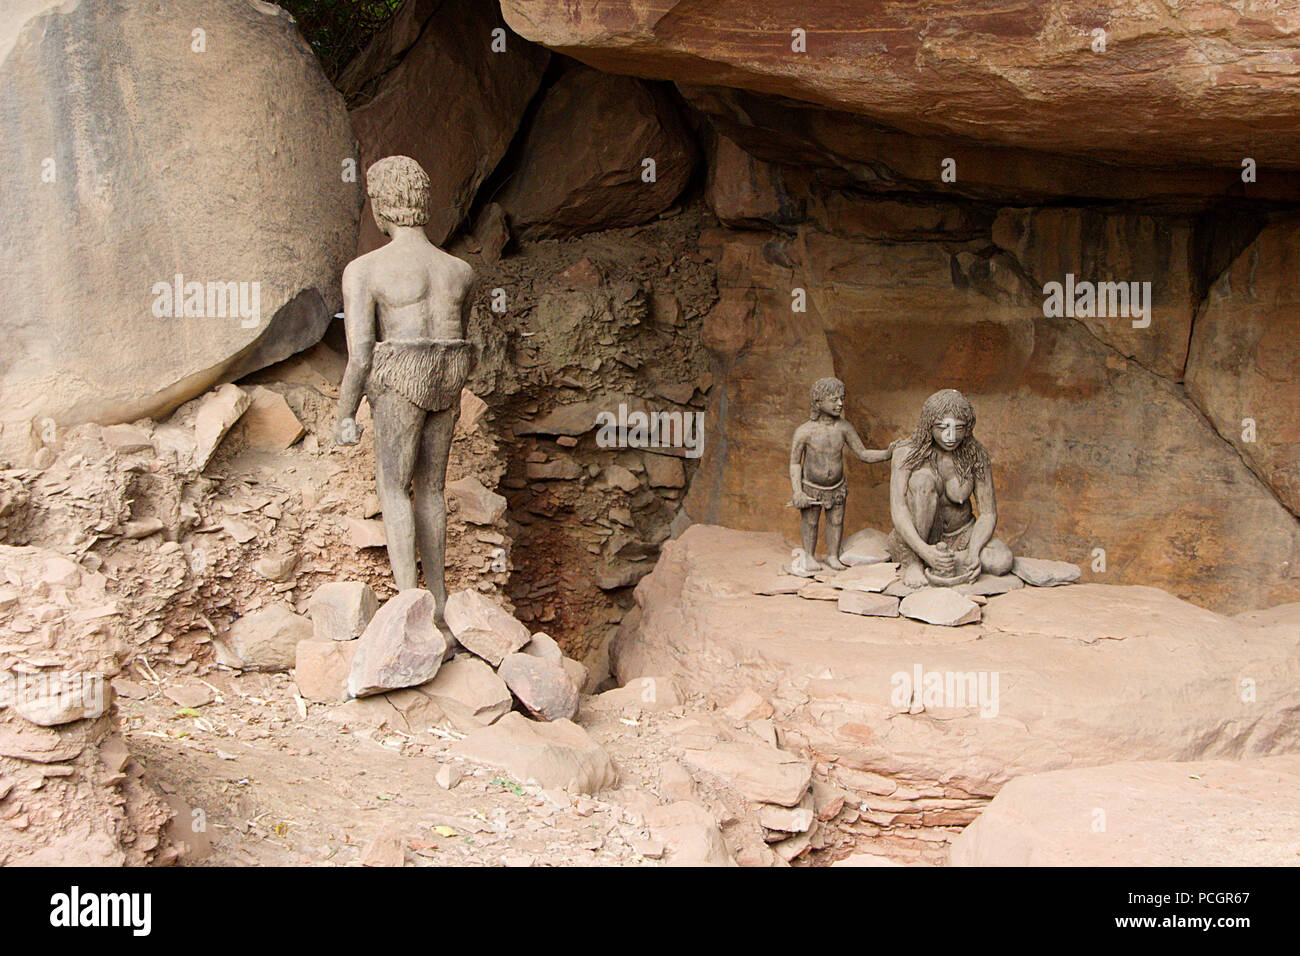 Stile di vita della grotta preistorica abitazione famiglia presso Bhimbetka grotte nei pressi di Bhopal in Madhya Pradesh, India, Asia Foto Stock